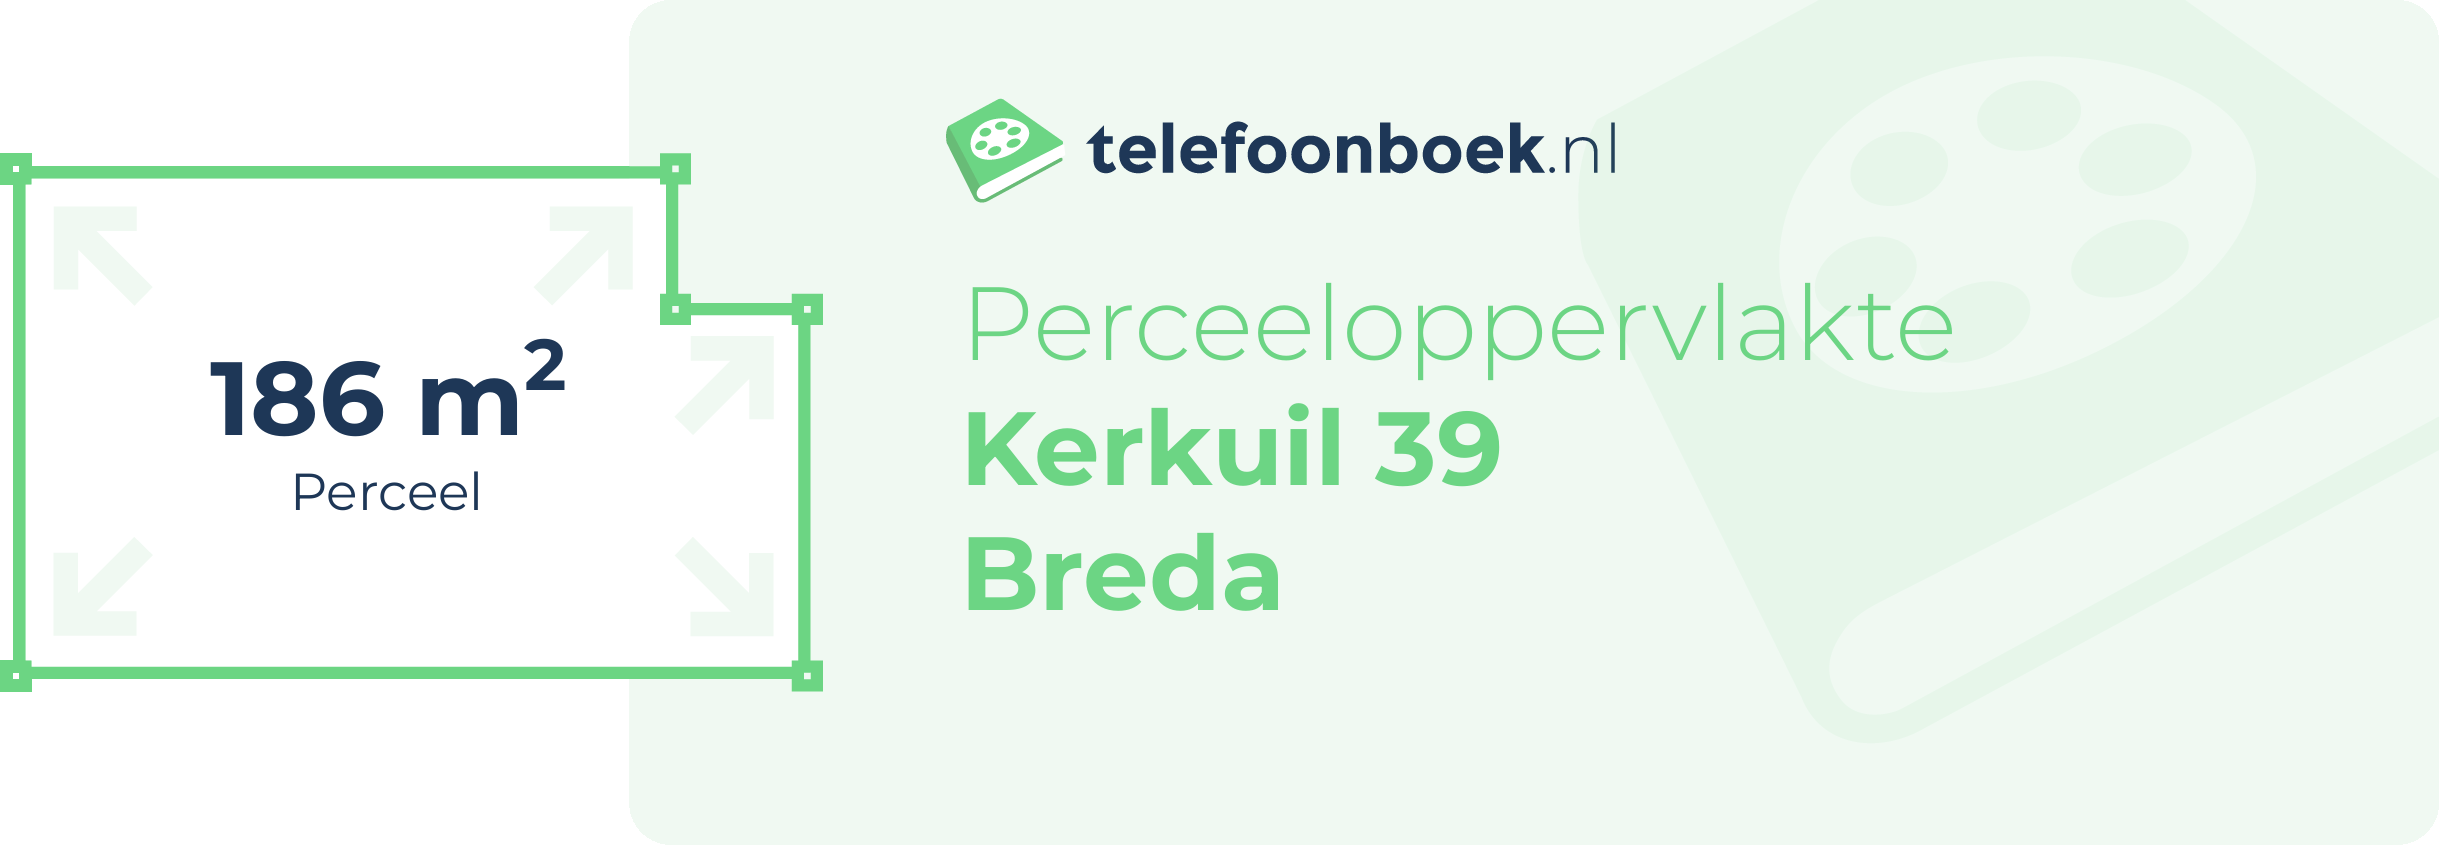 Perceeloppervlakte Kerkuil 39 Breda